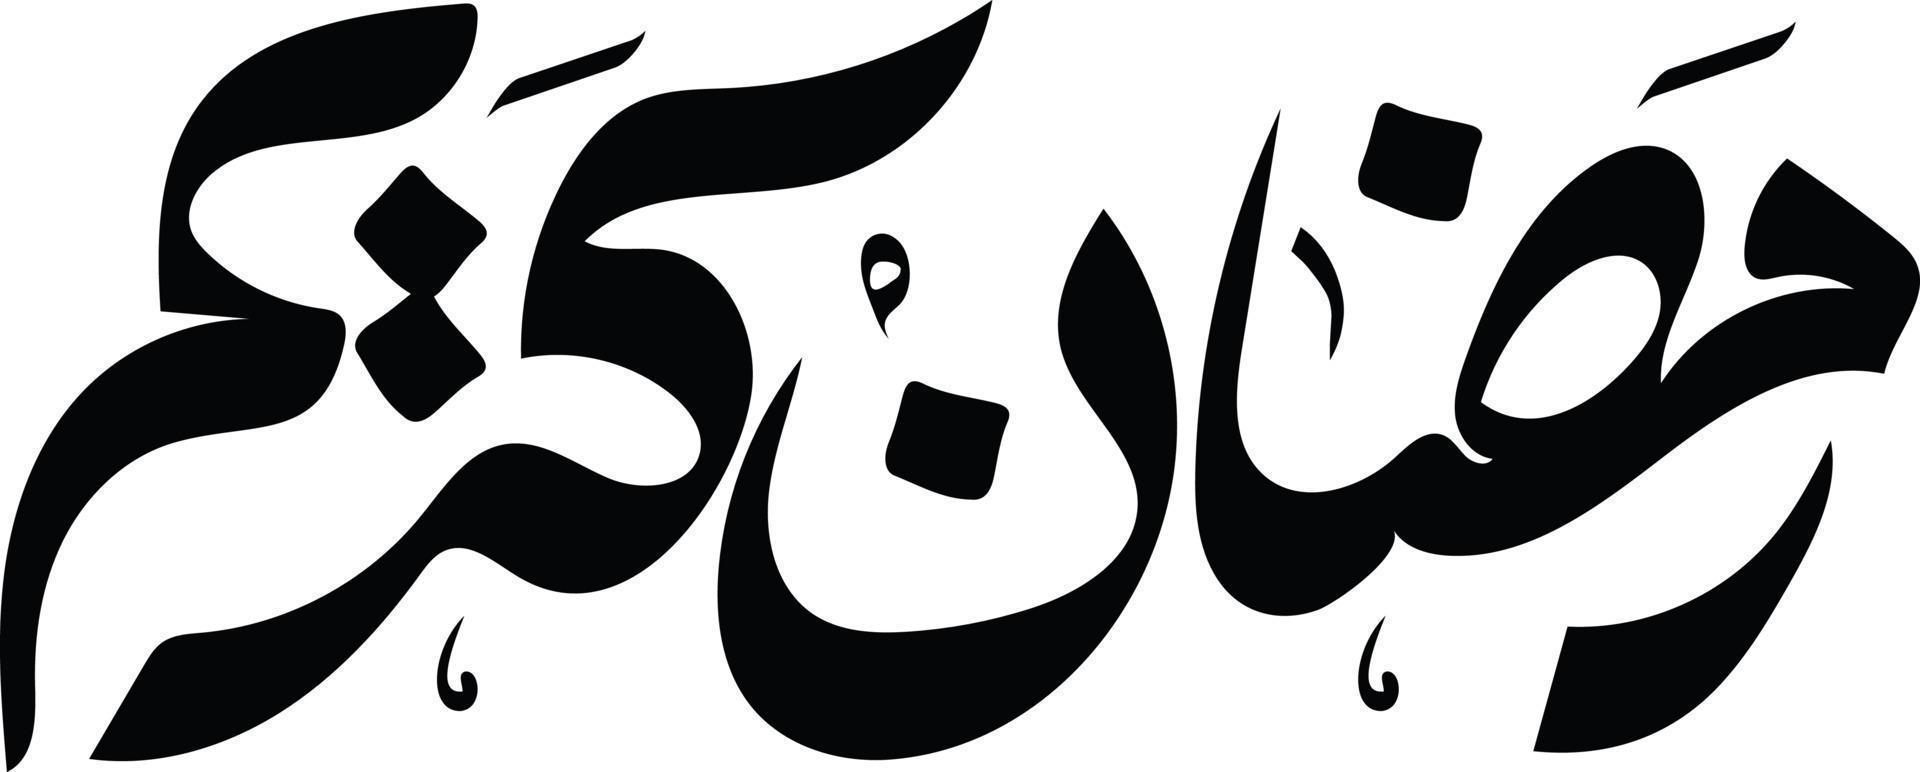 islamique arabe calligraphie gratuit vecteur